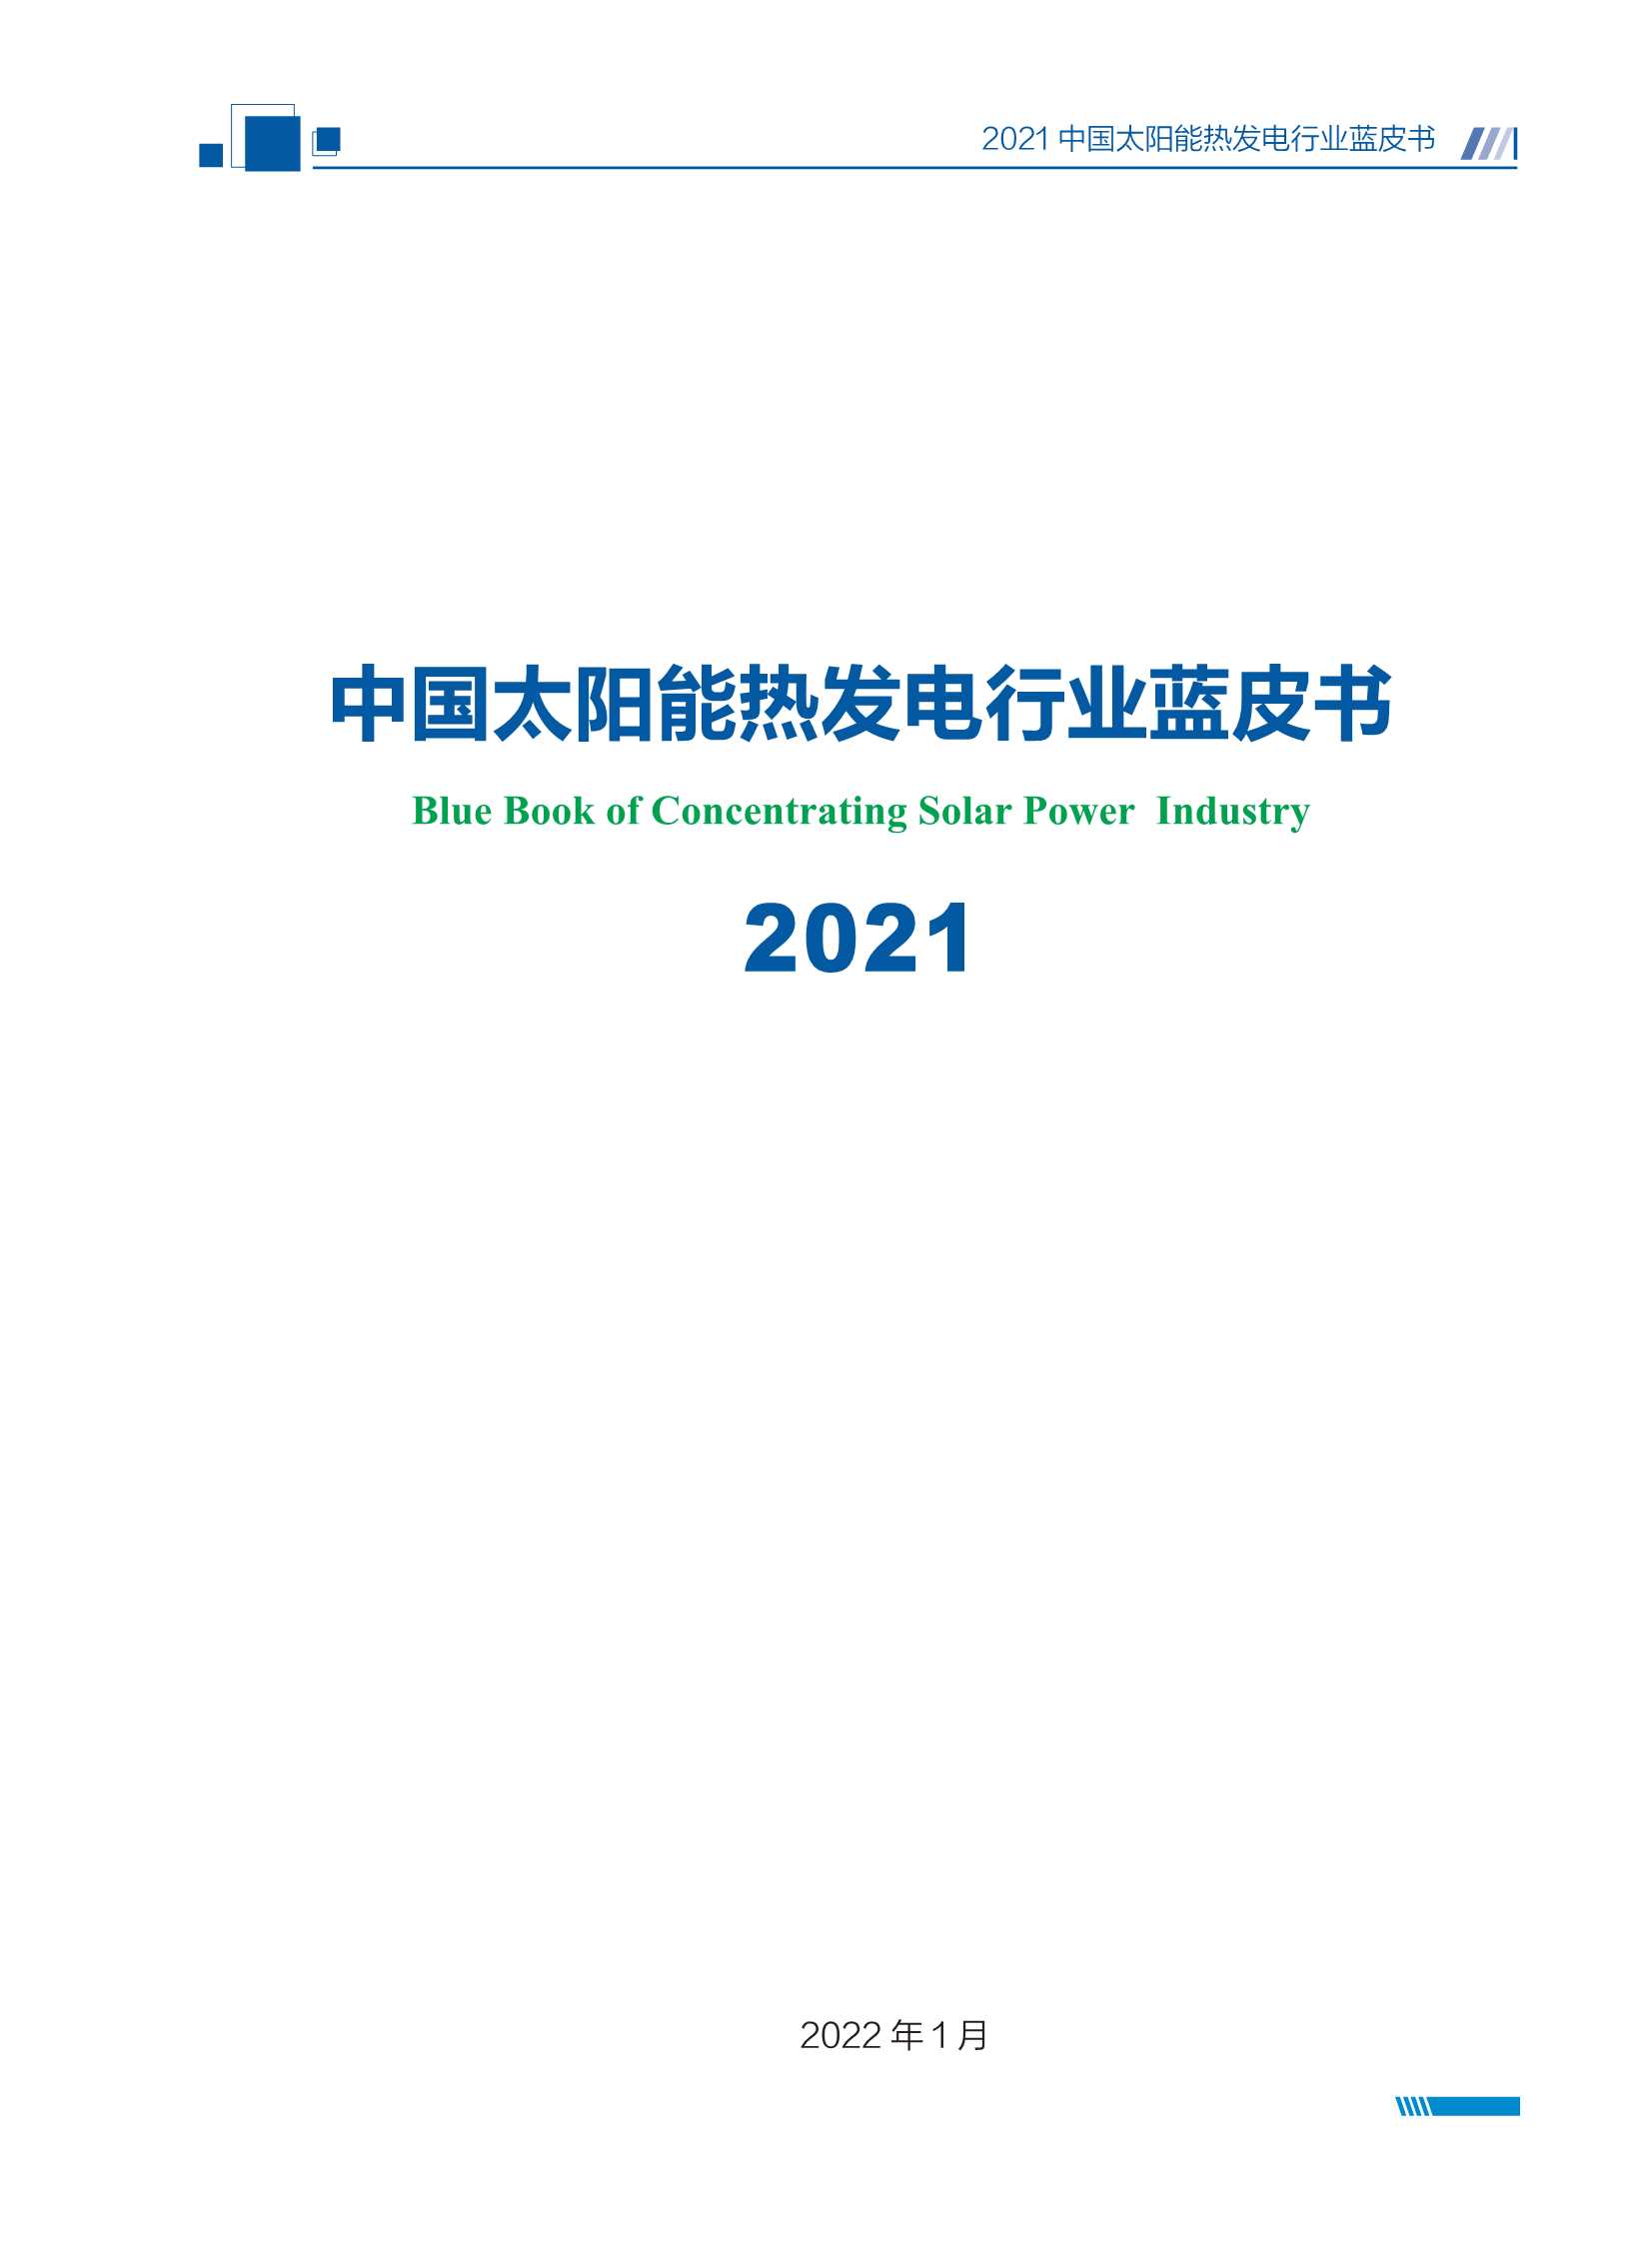 国家太阳能光热联盟秘书处-2021中国太阳能热发电行业蓝皮书-2022.02-74页